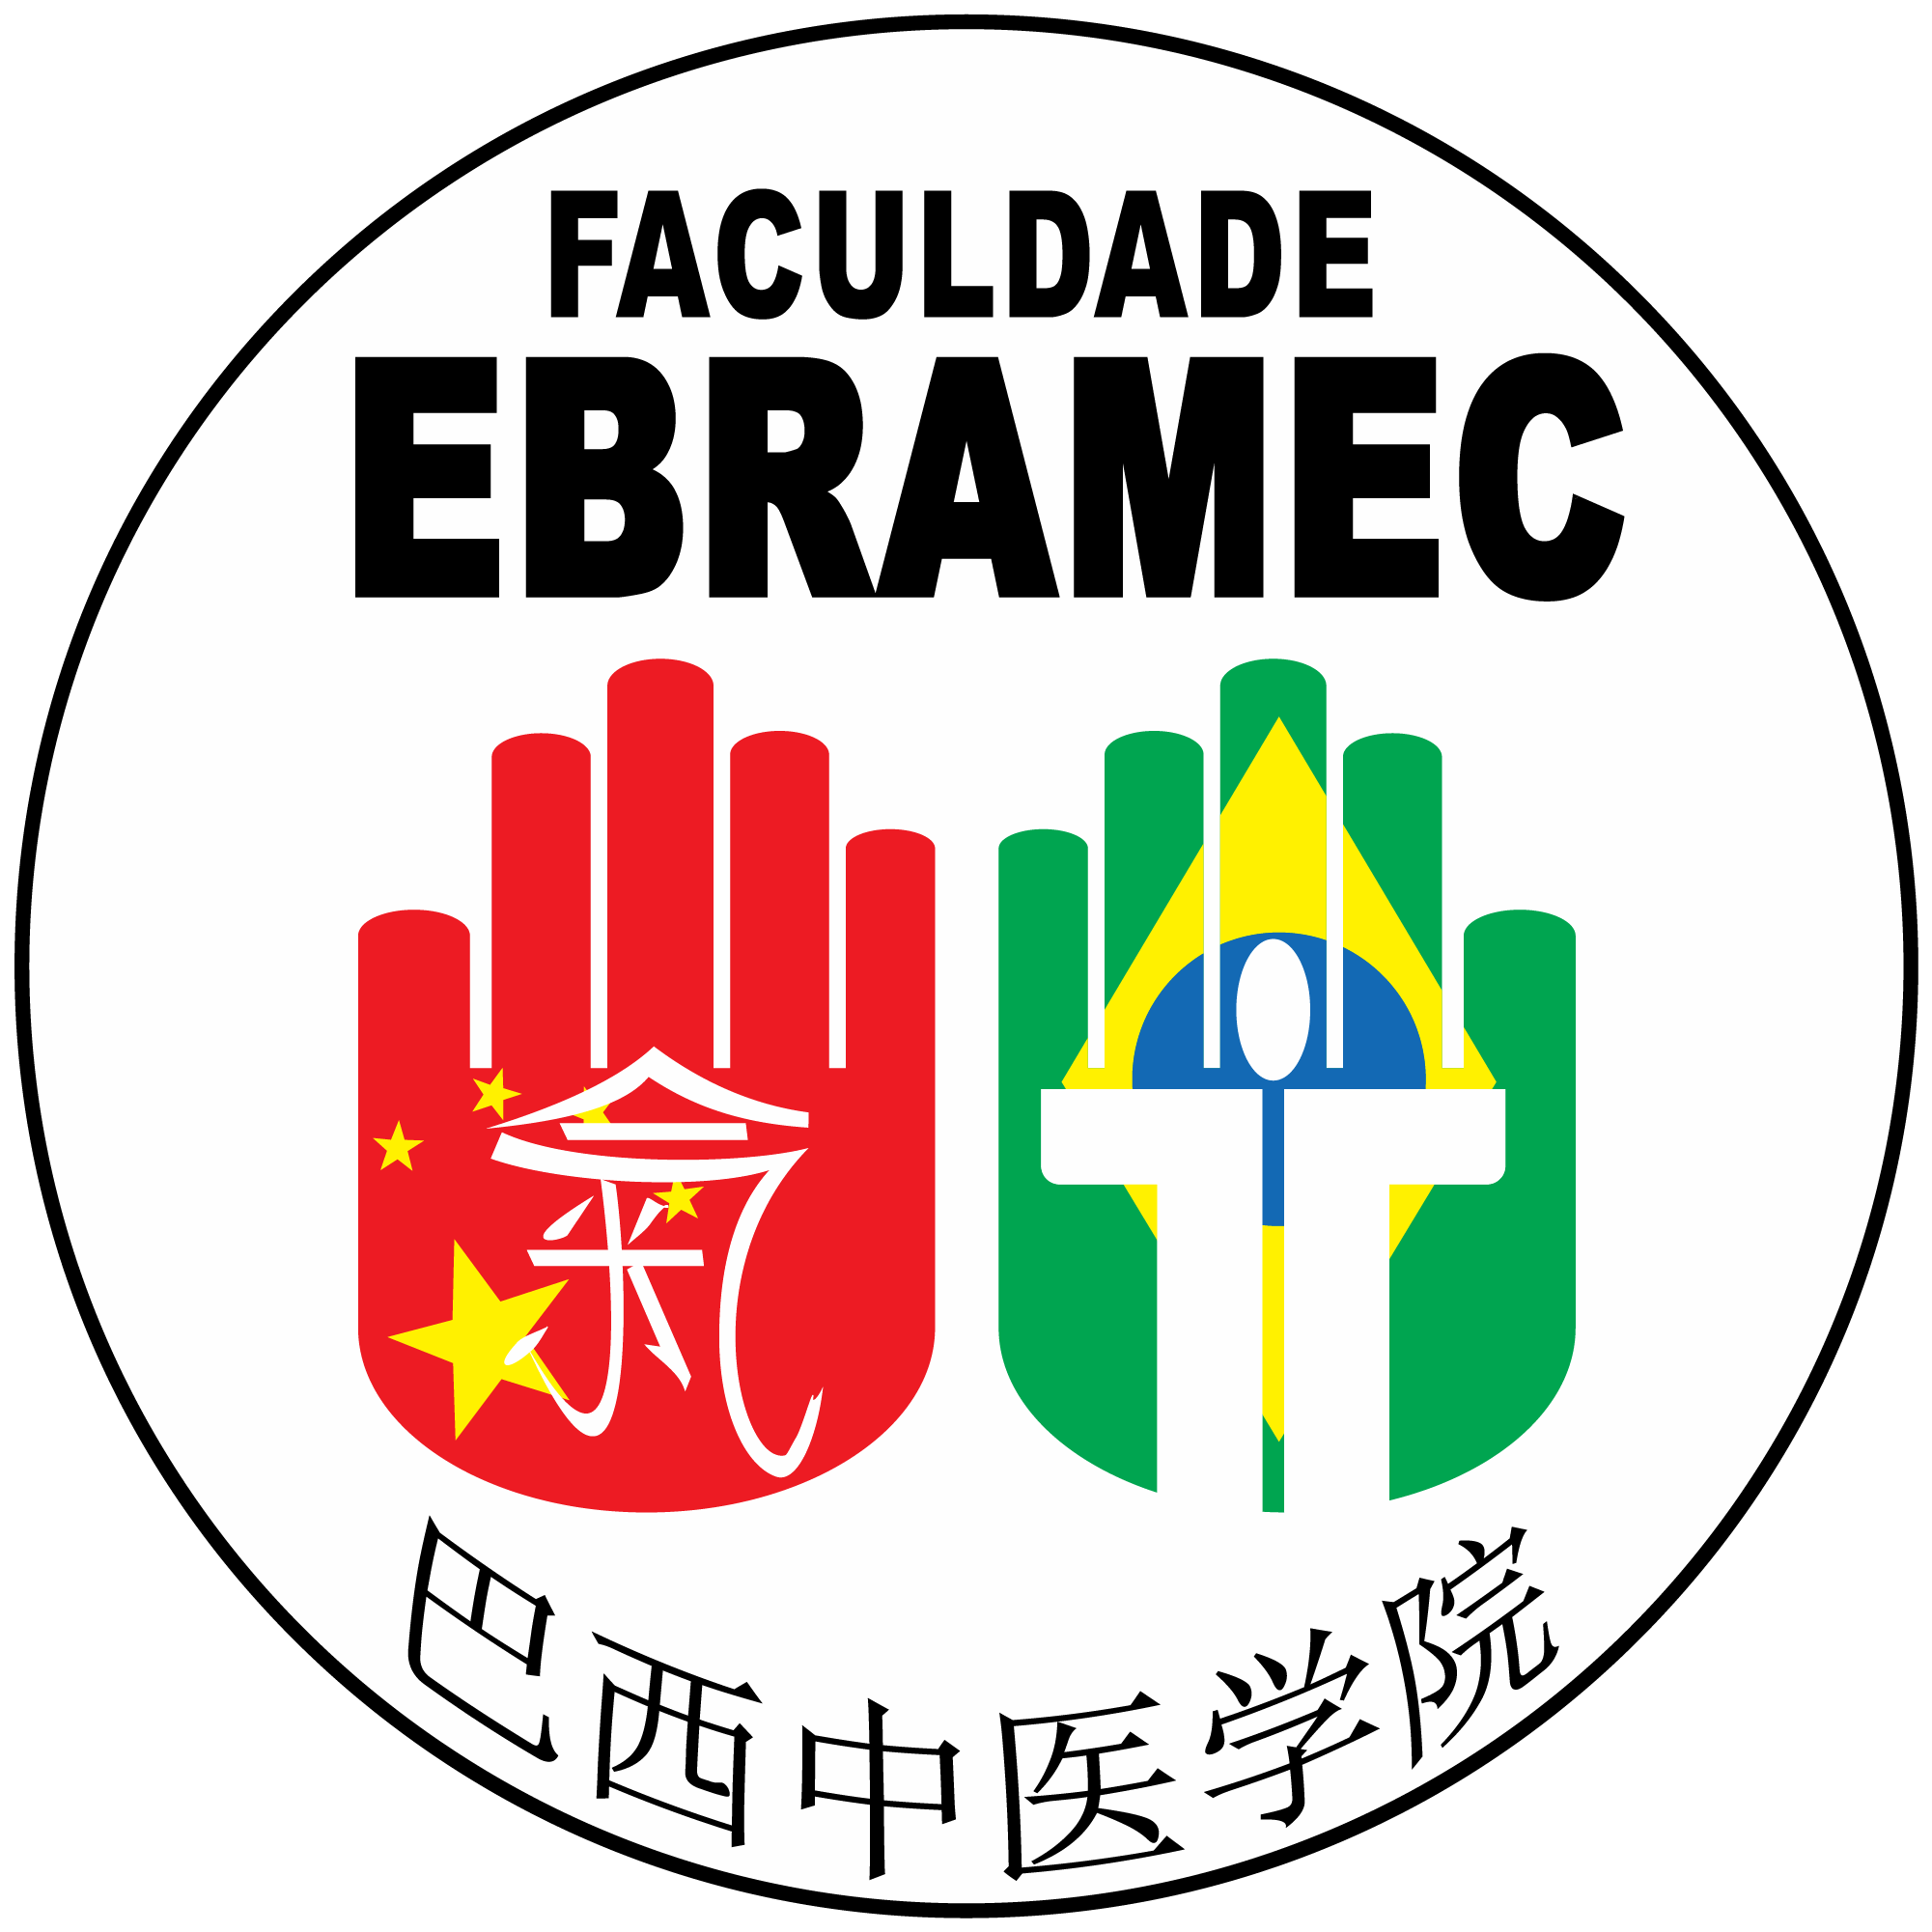 XIII Congresso Brasileiro de Medicina Chinesa